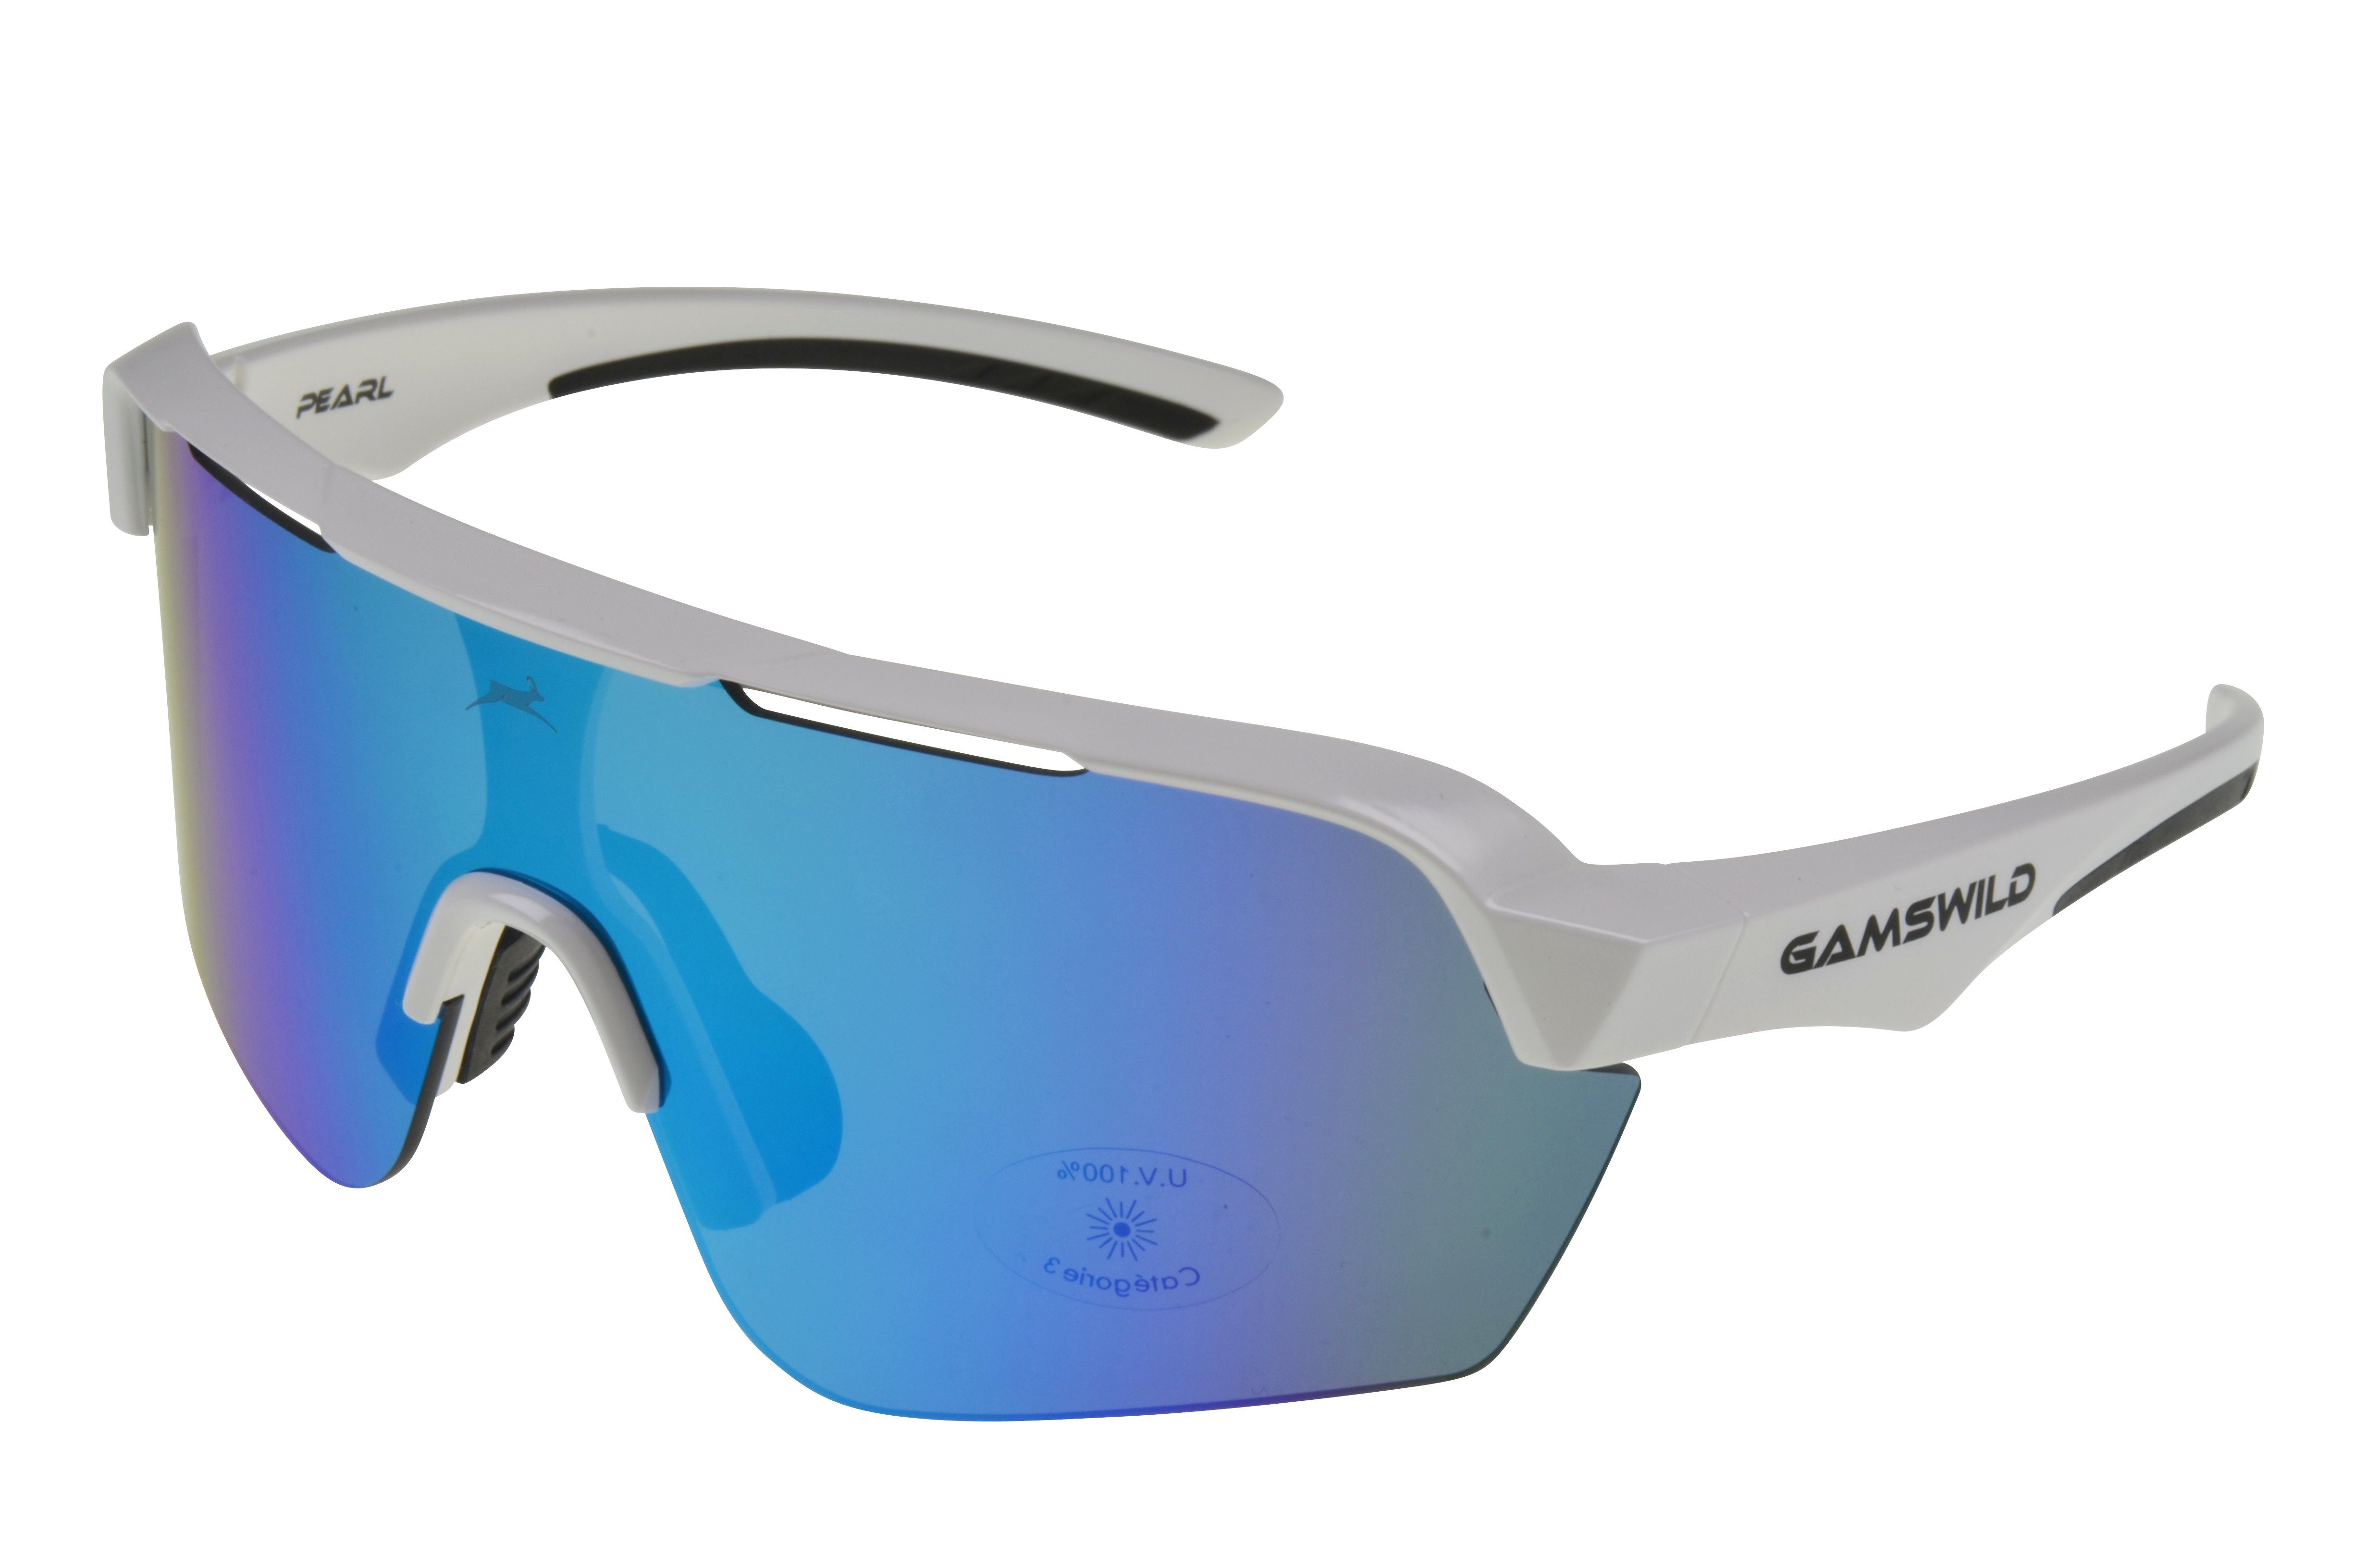 Gamswild Sportbrille WS7138 Sonnenbrille Fahrradbrille Skibrille Damen Herren Unisex, extra große Scheibe, pink, weiß, blau, schwarz, mintgrün weiß_blau cat.3